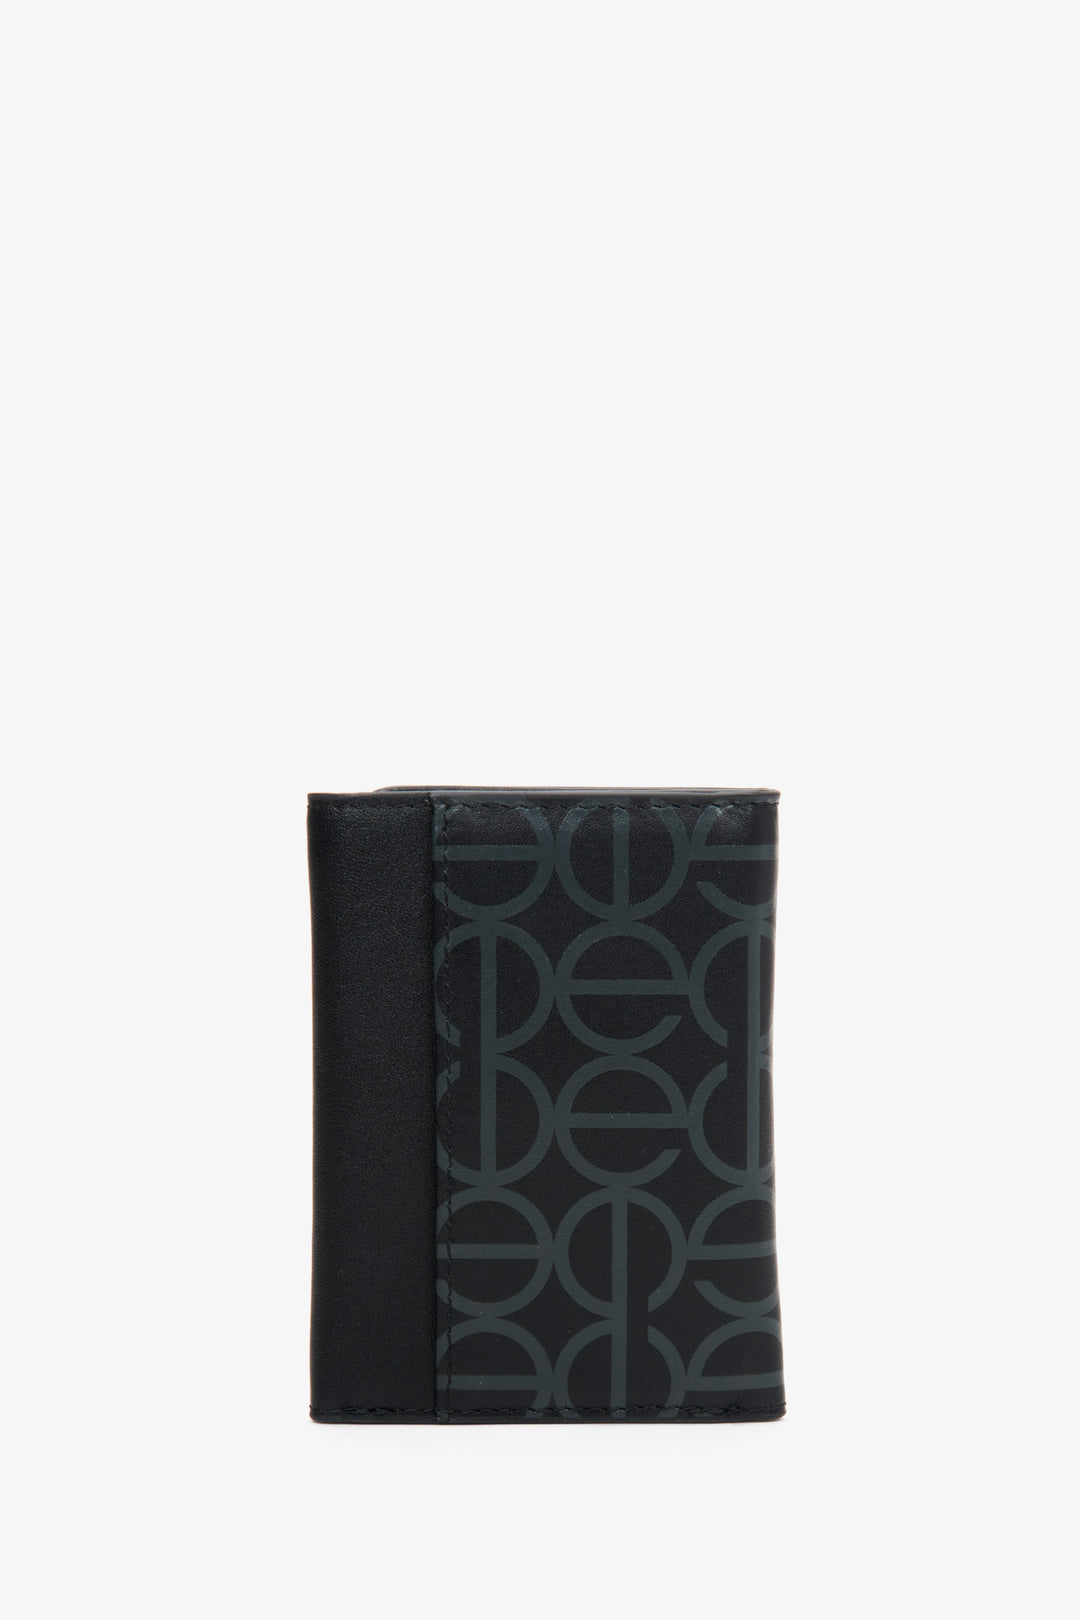 Poręczny portfel damski Estro w kolorze czarnym ze srebrnymi okuciami - rewers.